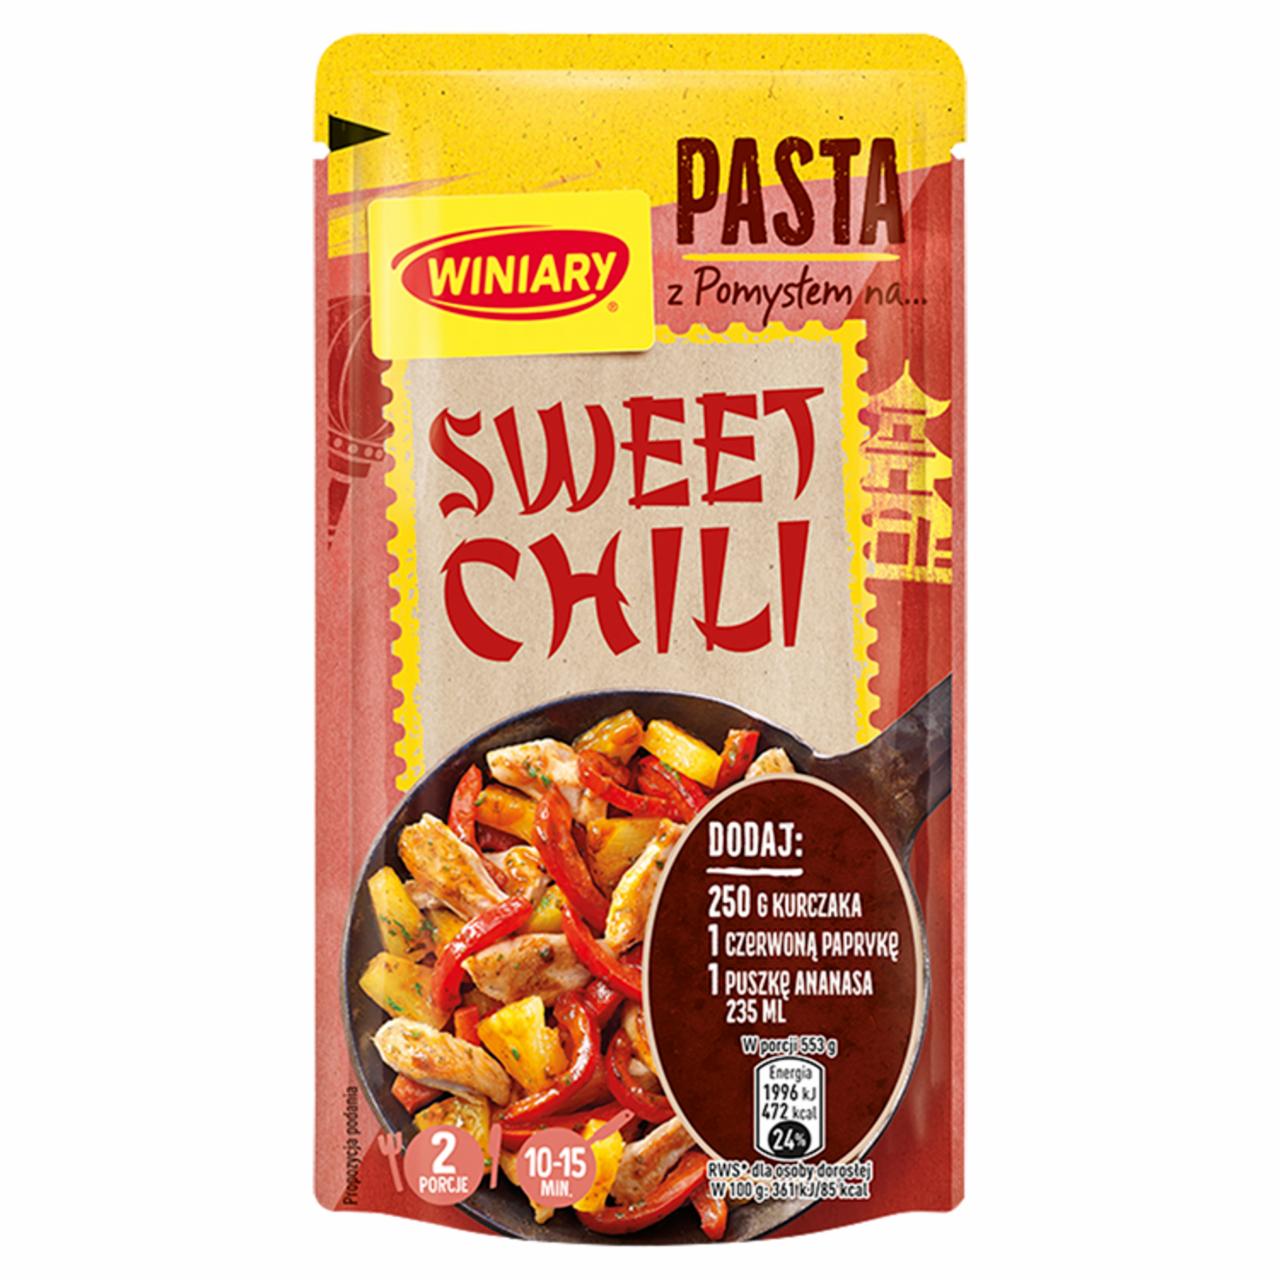 Zdjęcia - Winiary Pasta z pomysłem na... sweet chili 65 g